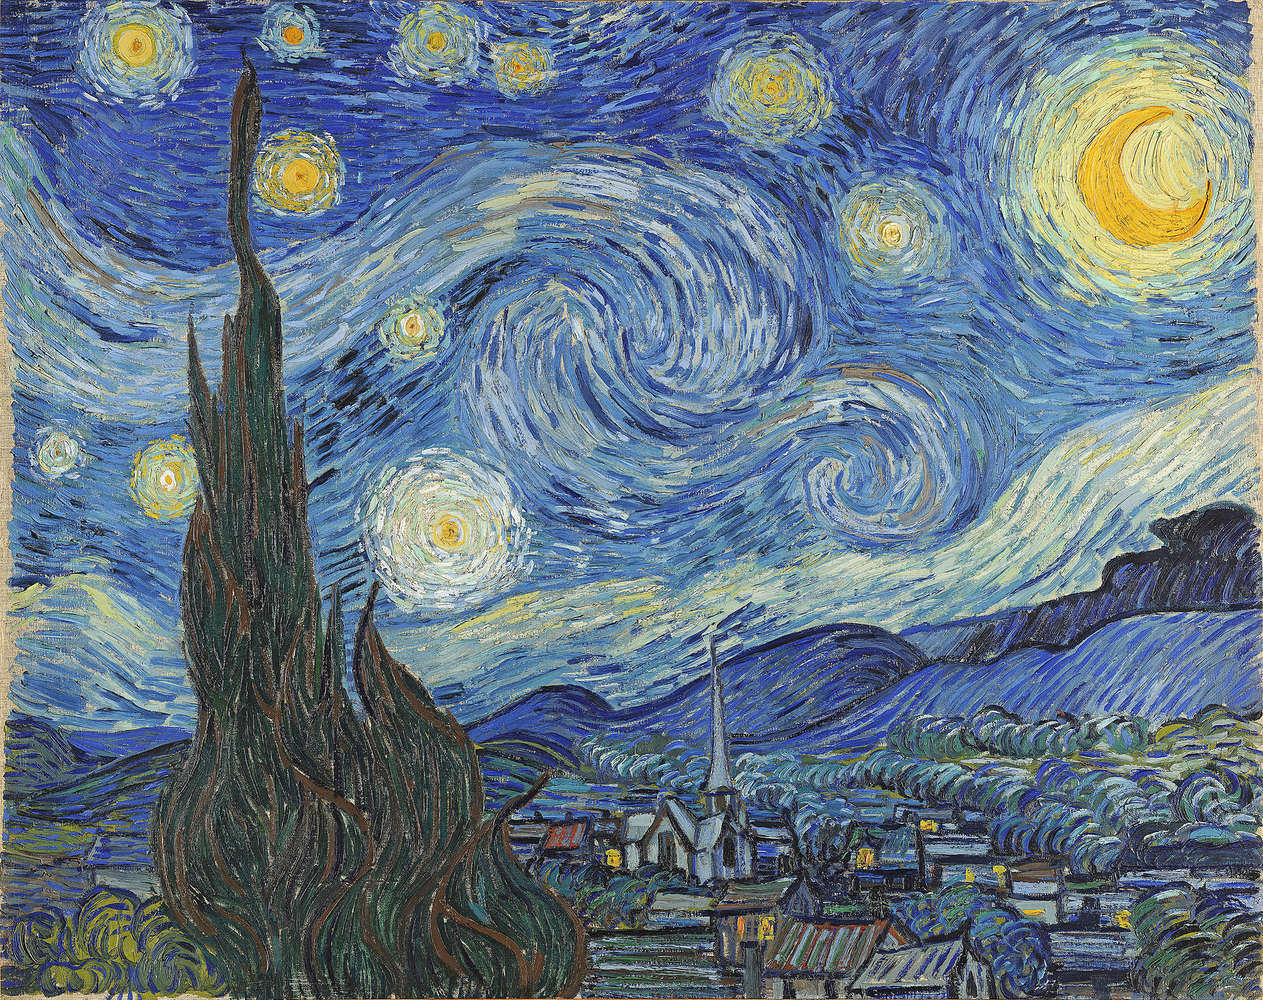             Papier peint panoramique "La nuit étoilée" de Vincent van Gogh
        